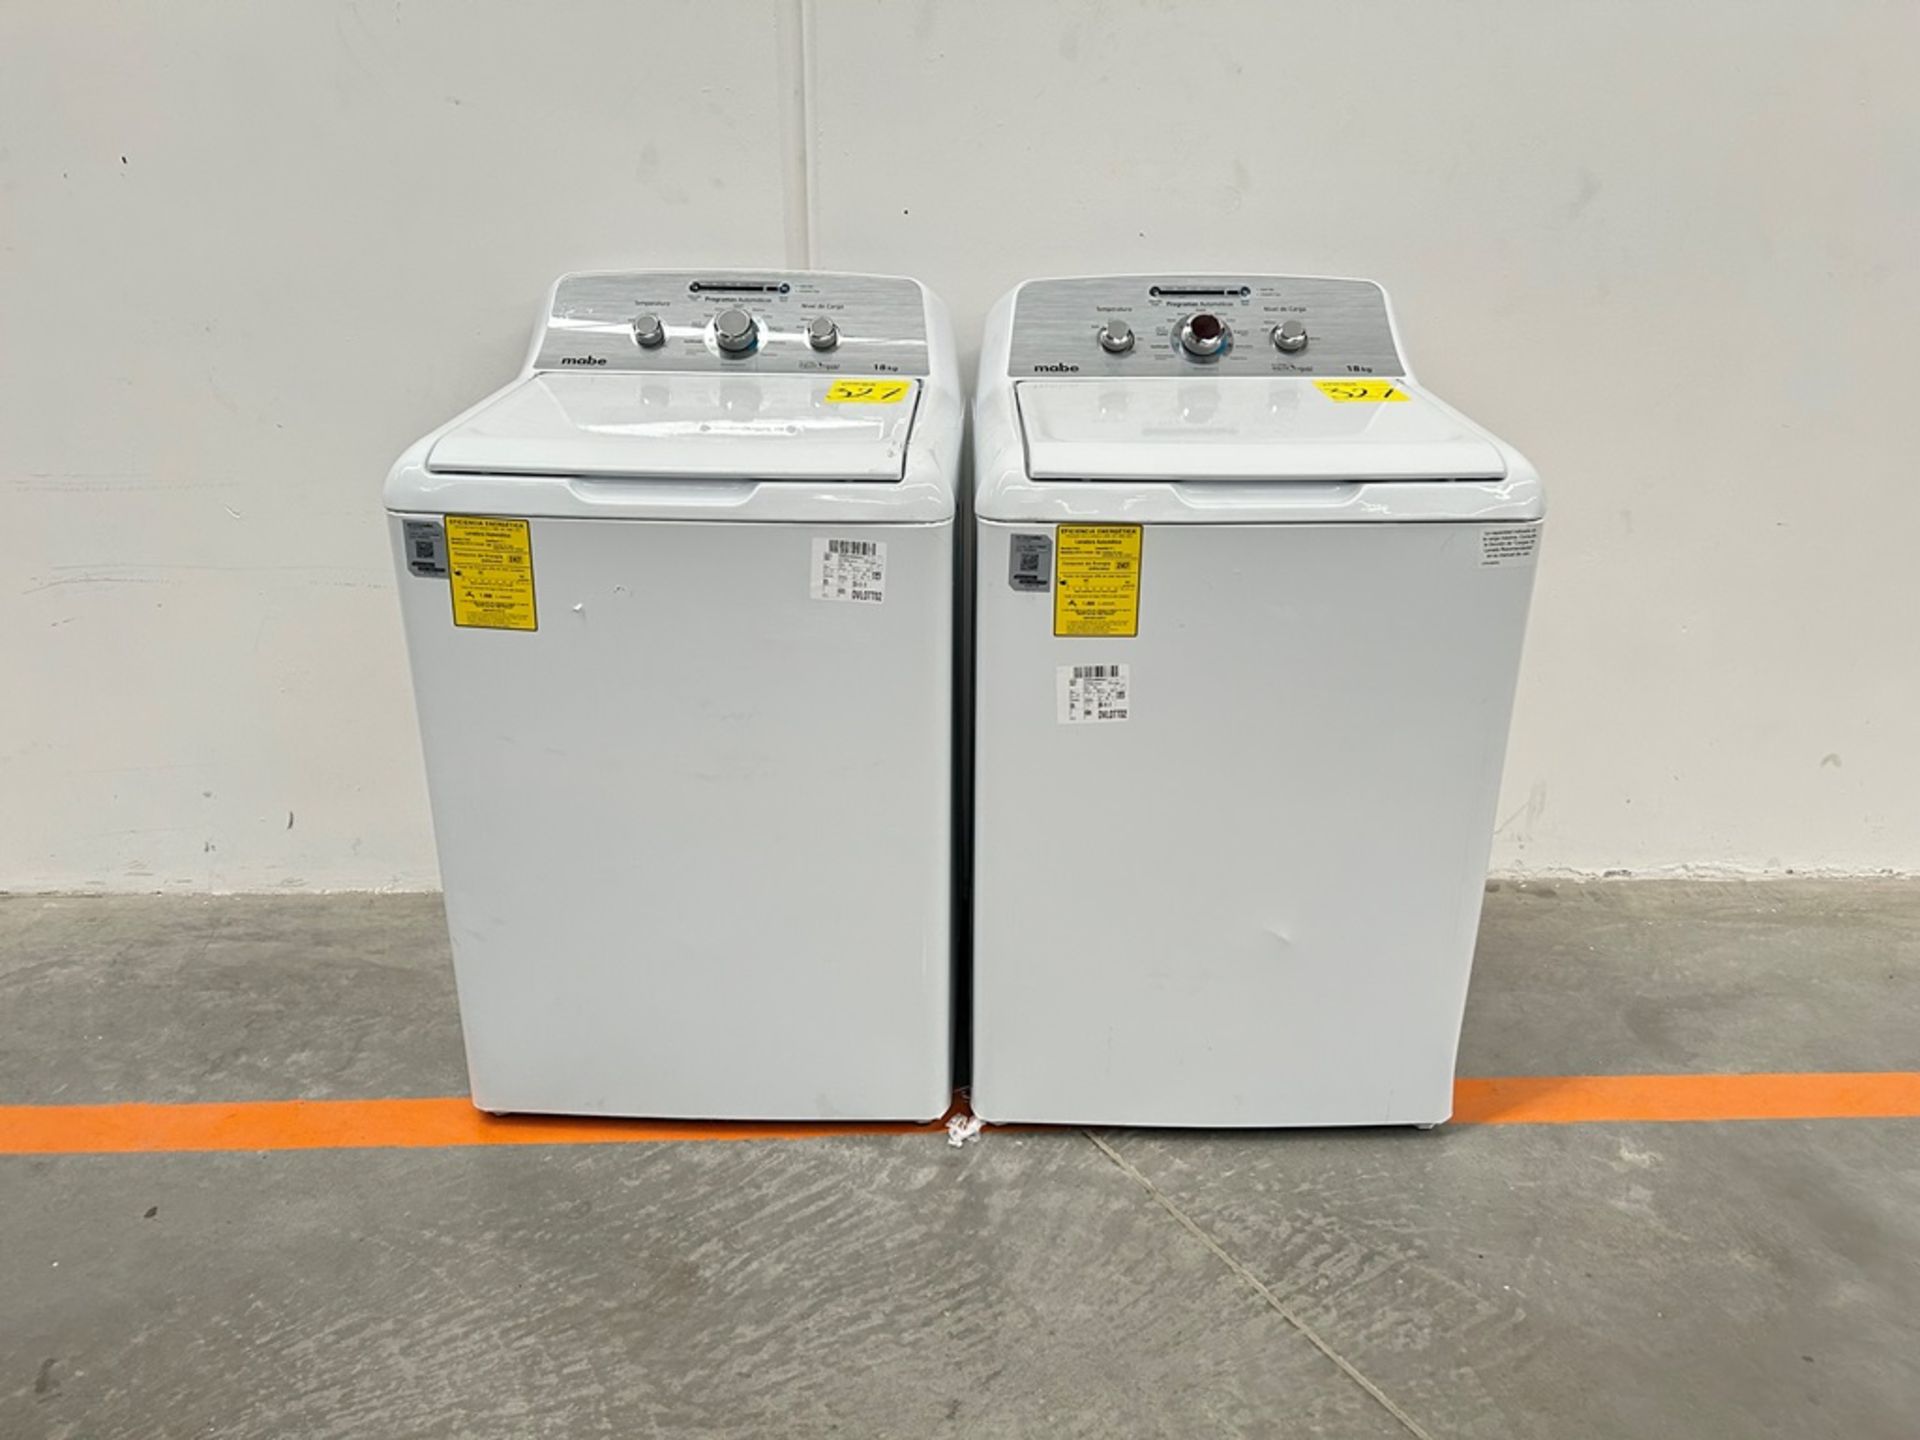 Lote de 2 lavadoras contiene: 1 Lavadora de 18 KG Marca MABE, Modelo LMA78113CBAB01, Serie S90918,